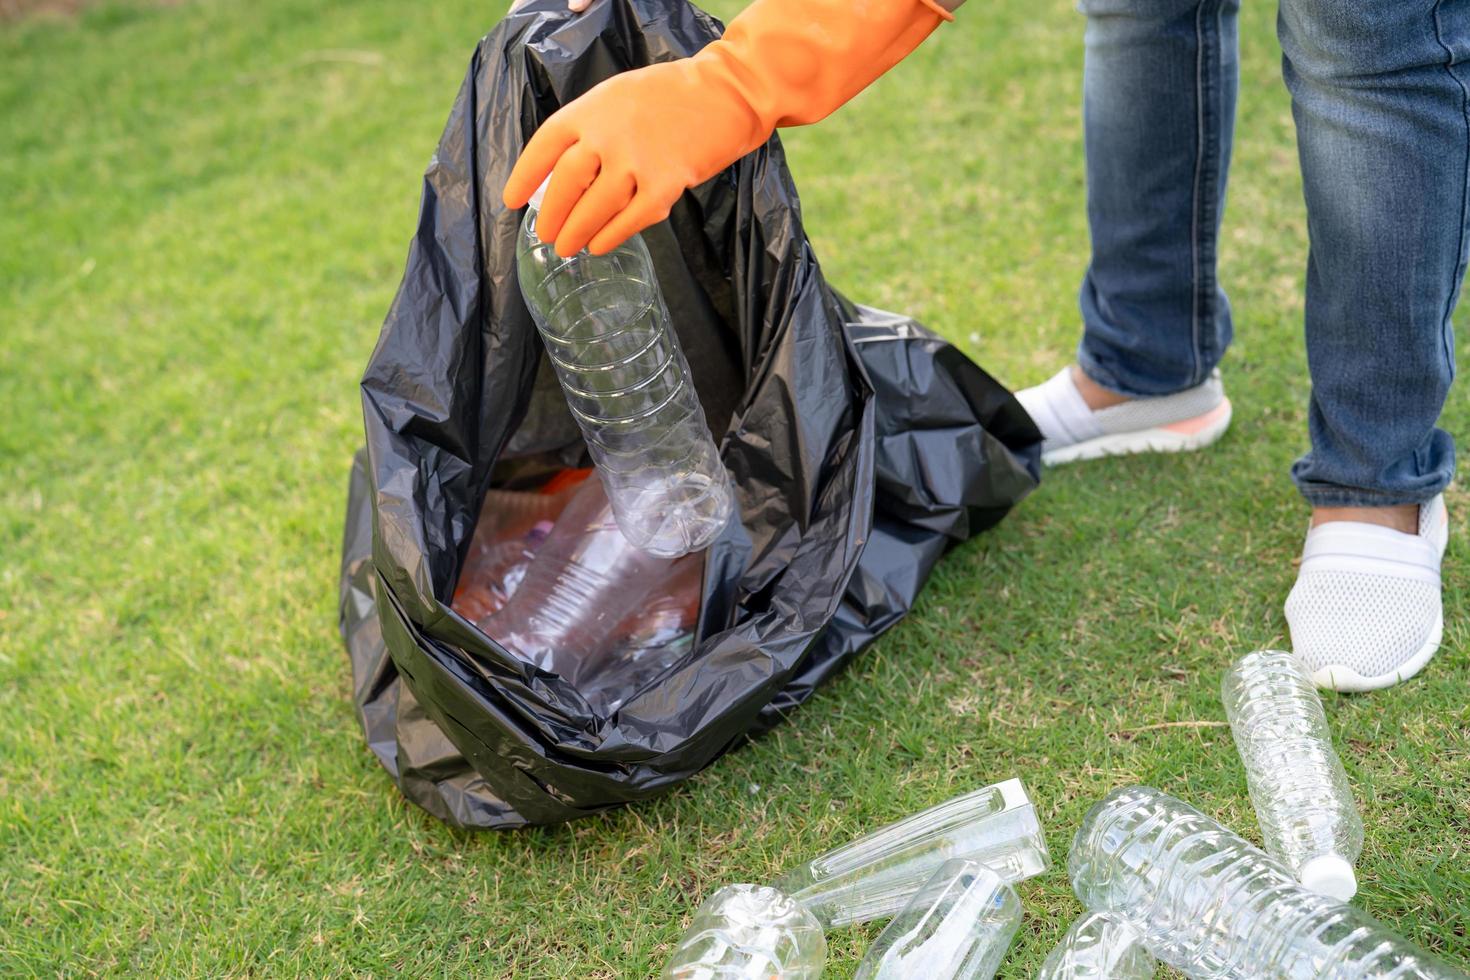 Voluntario de mujer asiática llevar botellas de plástico de agua a la basura de la bolsa de basura en el parque, reciclar el concepto de ecología del medio ambiente de residuos foto